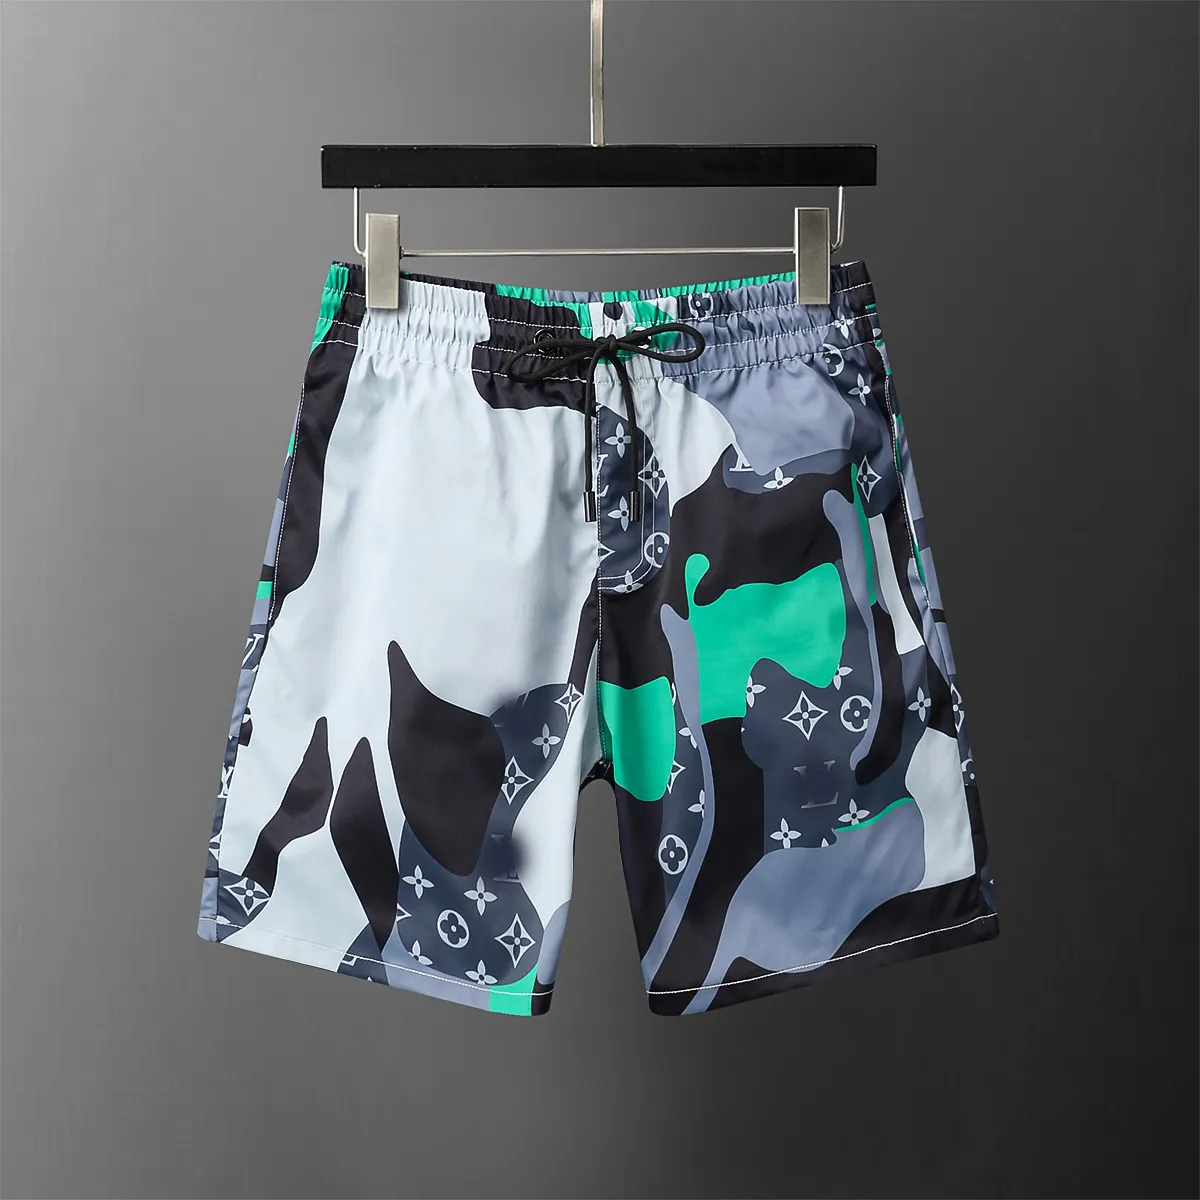 Masculino shorts masculinos algodão relaxado letra solta joelho comprimento masculino curto verão moda calça casual calças praia de praia m-3xl8